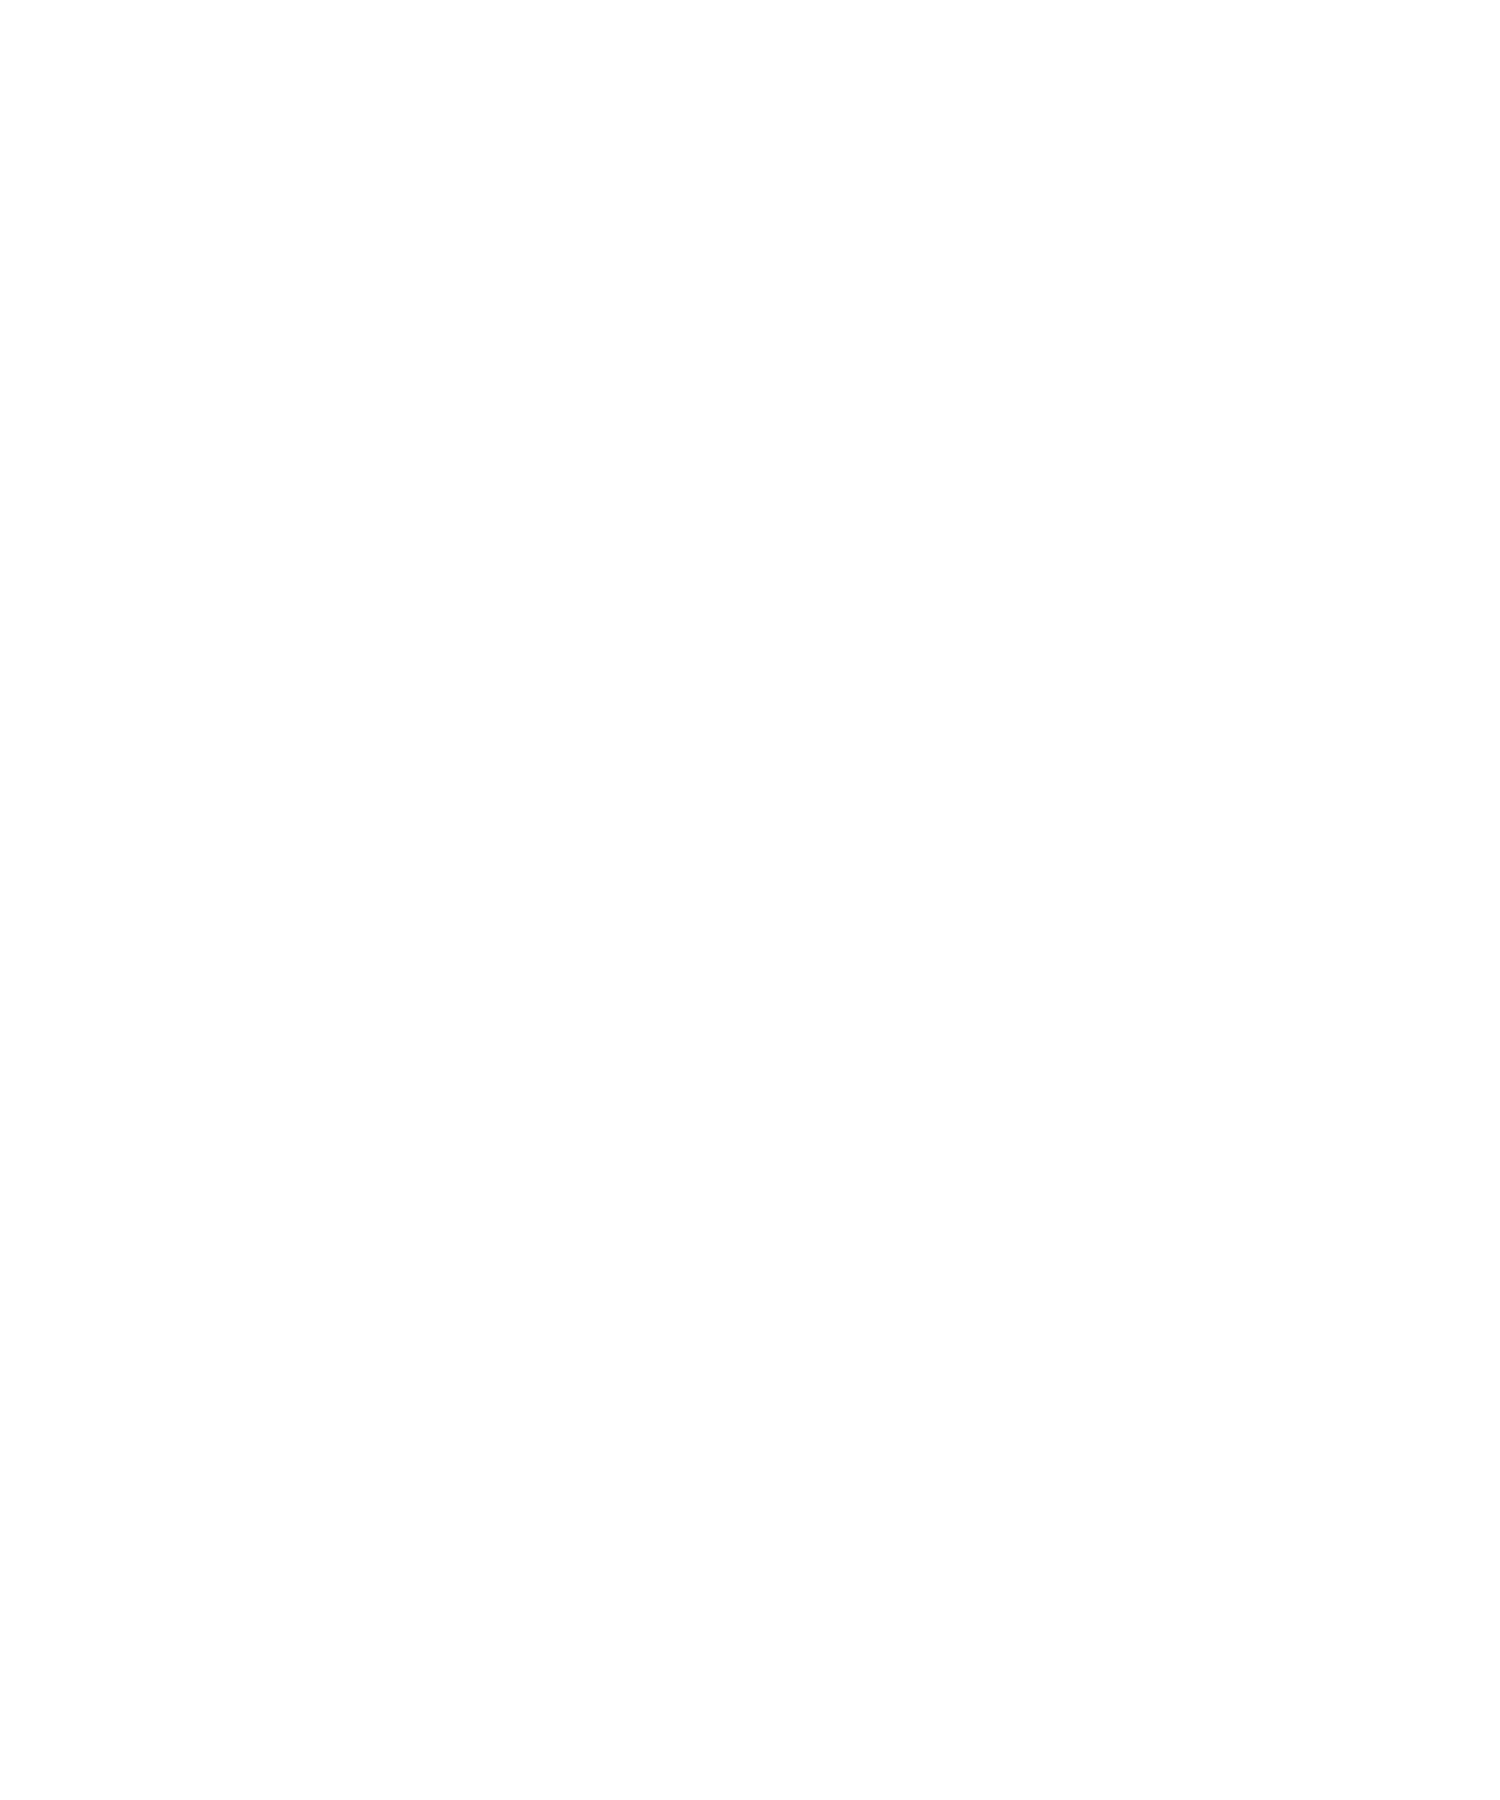 The REACH Initiative